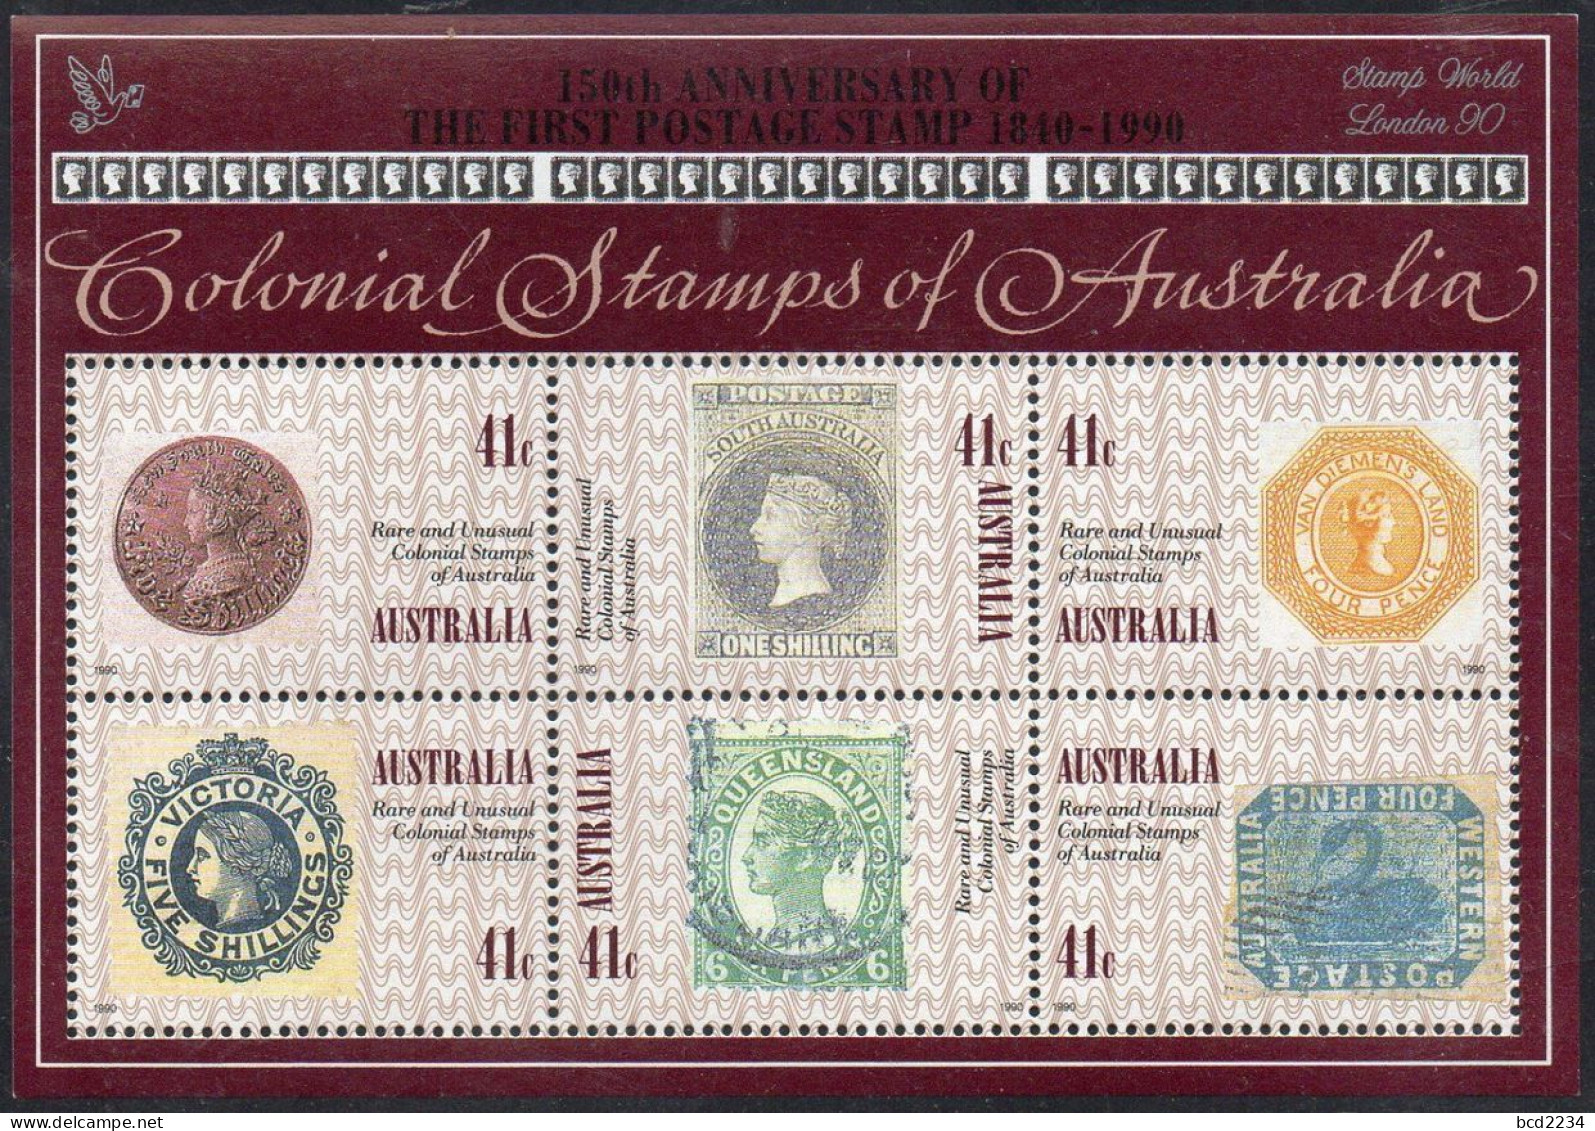 AUSTRALIA 1990 RARE & UNUSUAL COLONIAL STAMPS X10 + SILVER STAMP WORLD LONDON 90 OVERPRINT SG MS1253 Mi BL 10 MNH - Briefmarken Auf Briefmarken